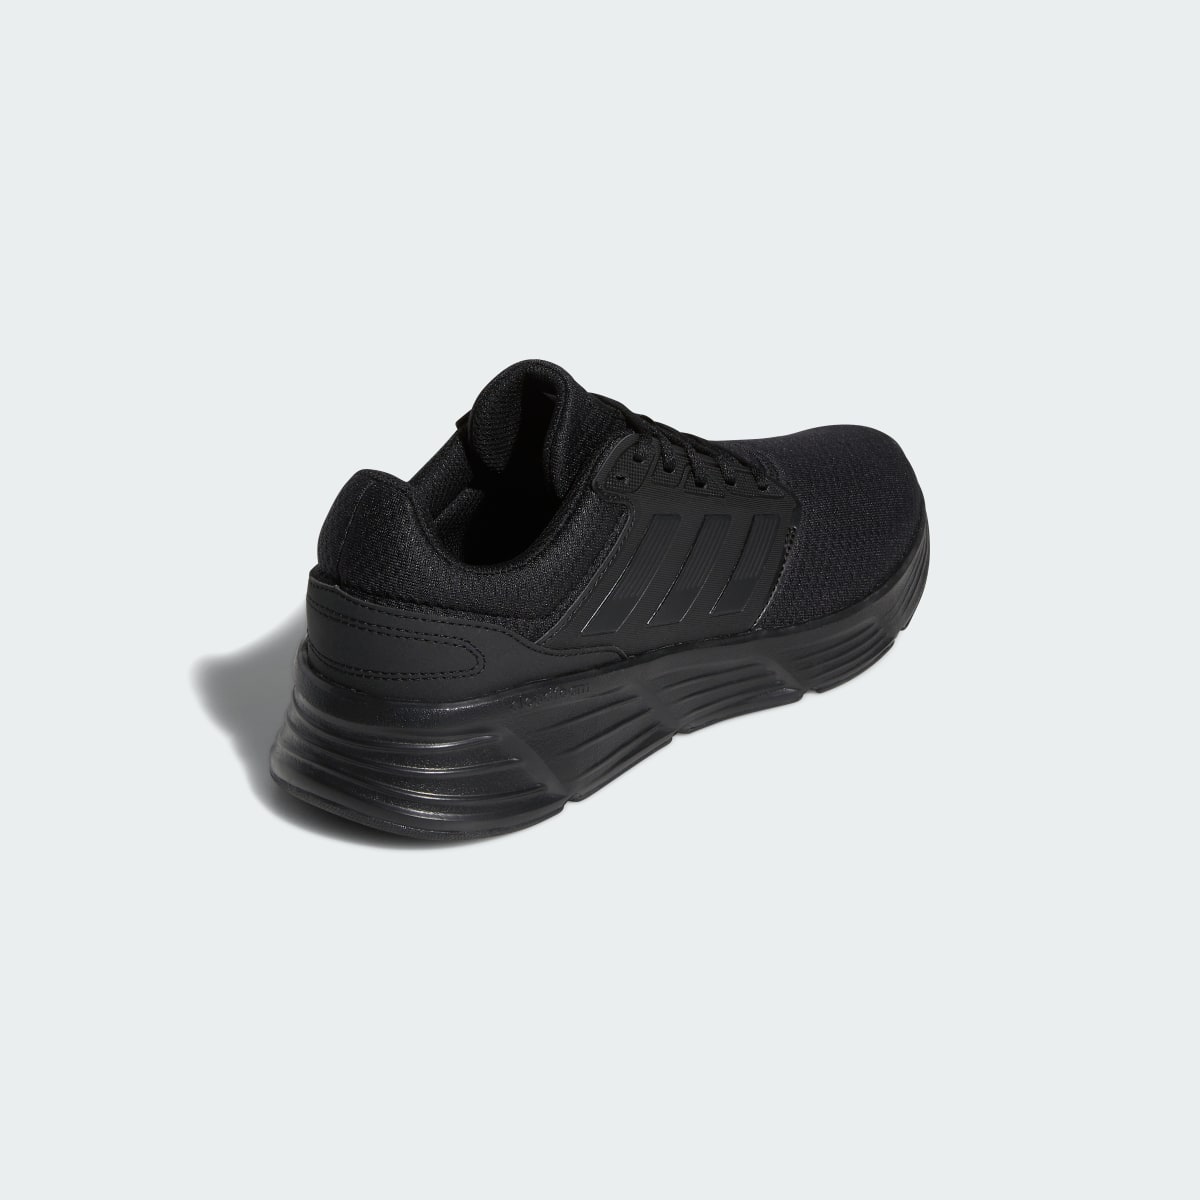 Adidas Galaxy 6 Ayakkabı. 6